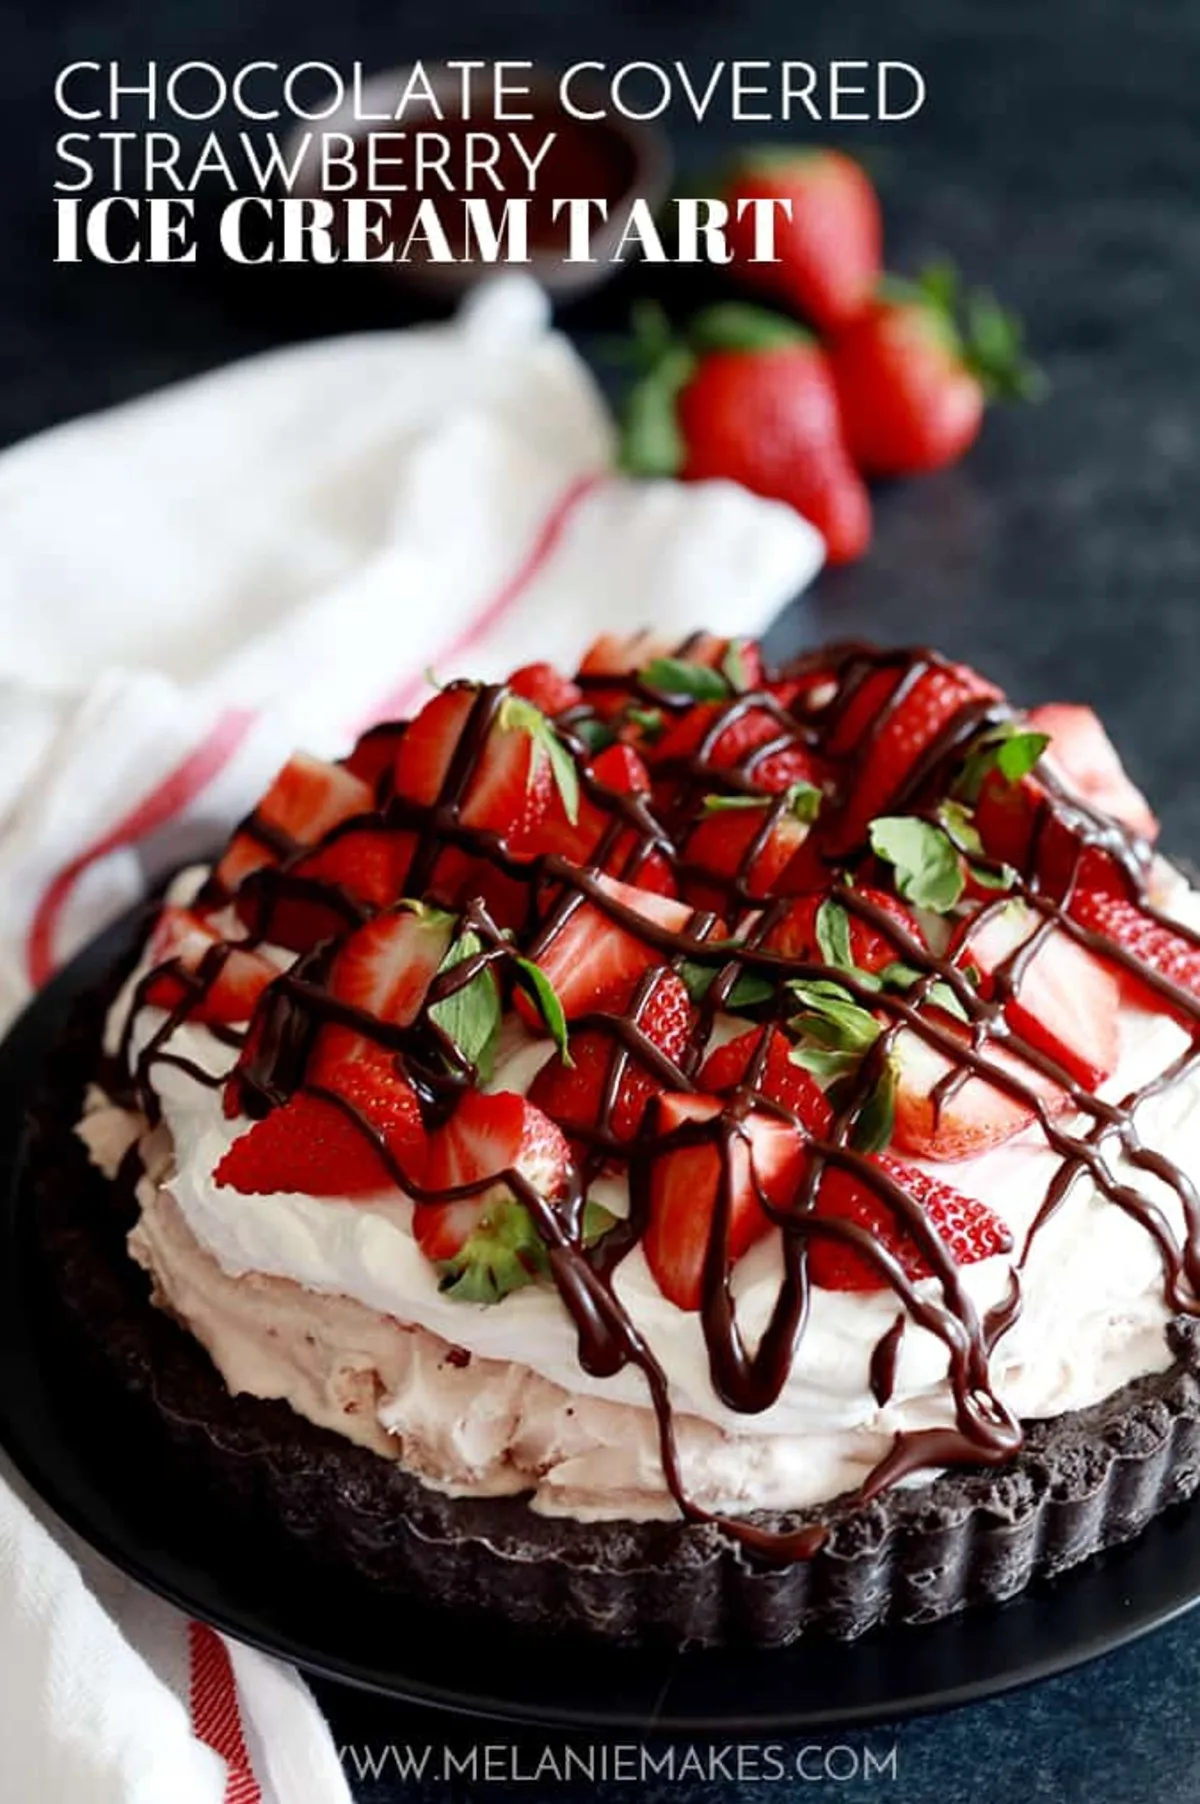 Ice Cream Tart with strawberries